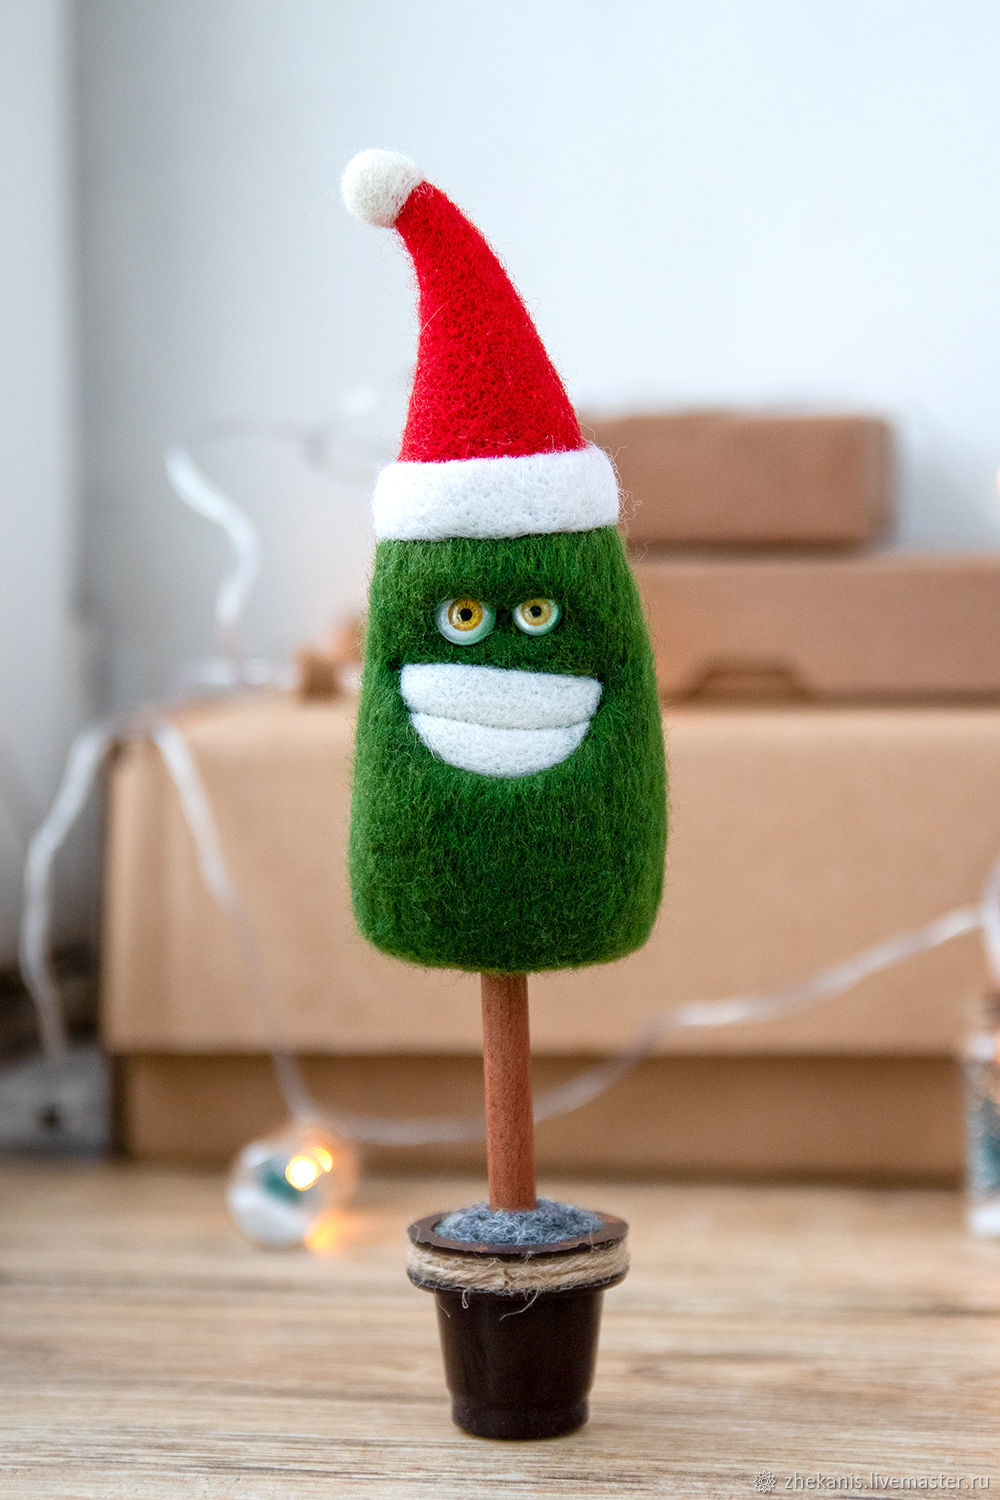 Aurora Palm Pals - Зеленая мягкая плюшевая игрушка Новогодняя елка (12см) | Childrensalon